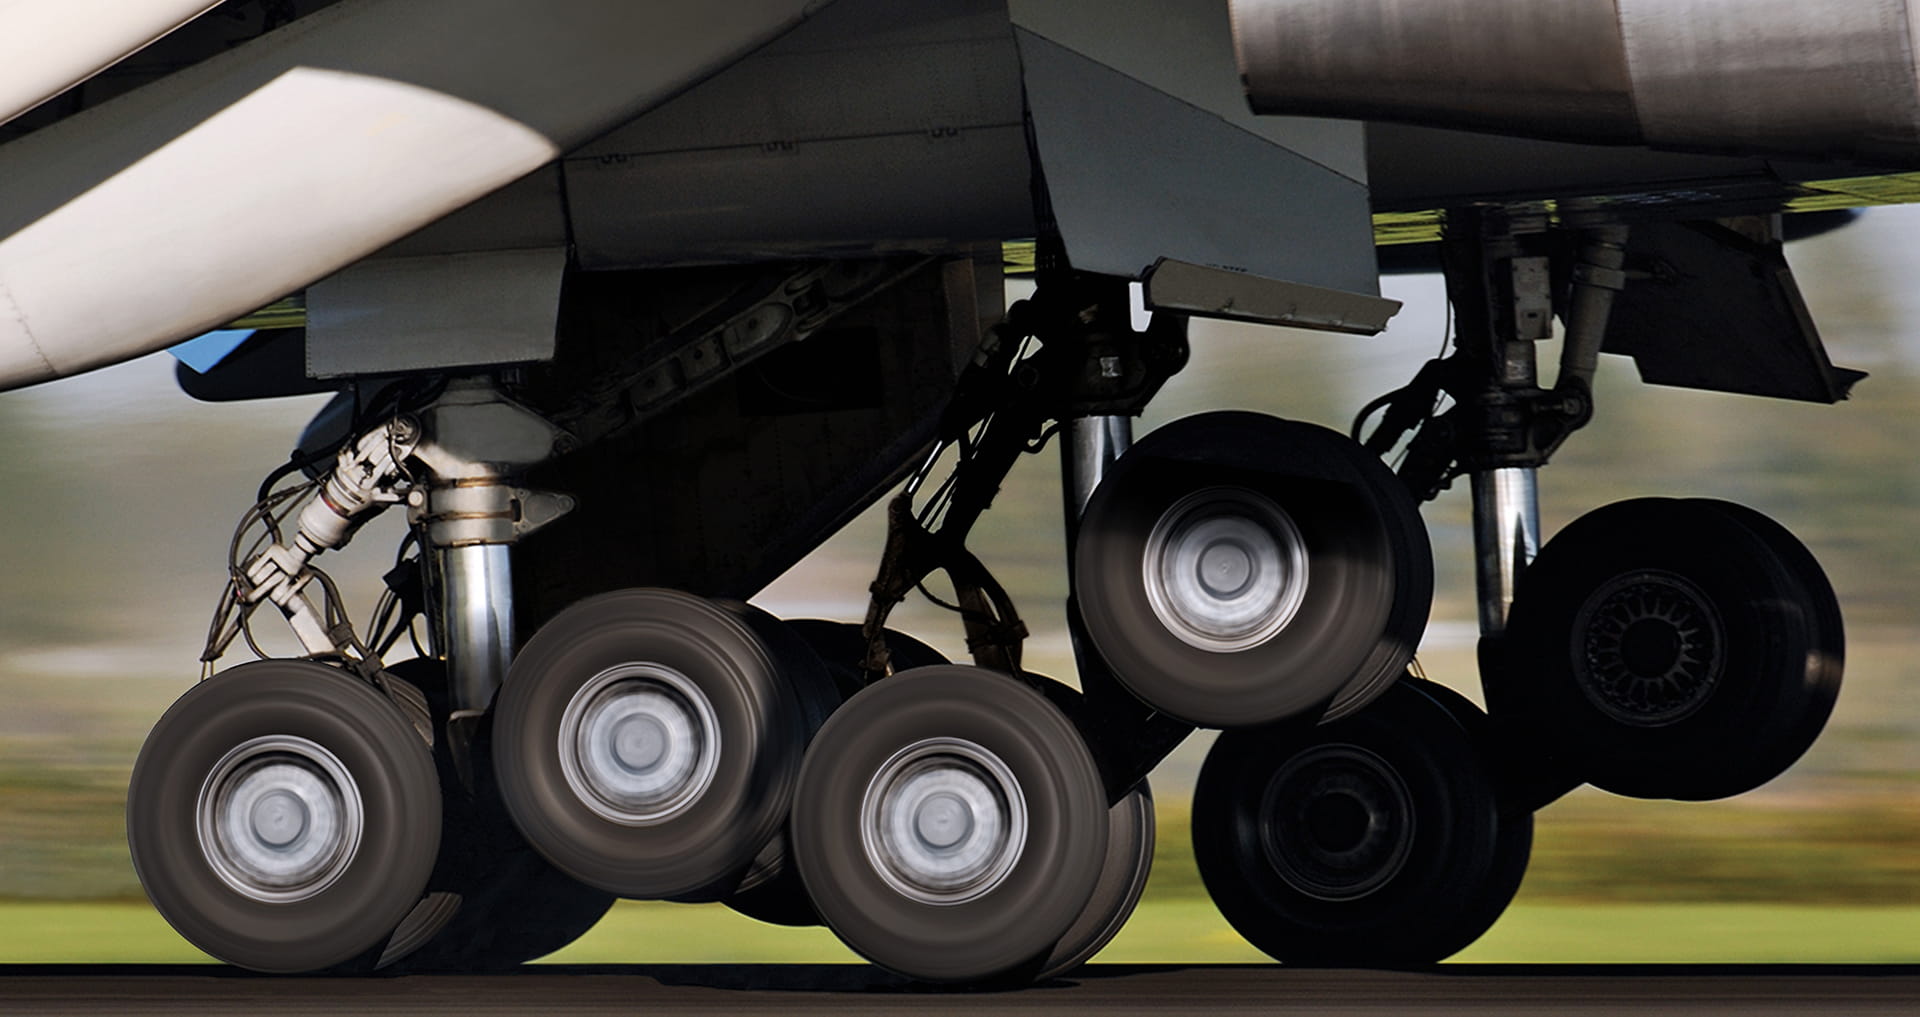 Aircraft wheels